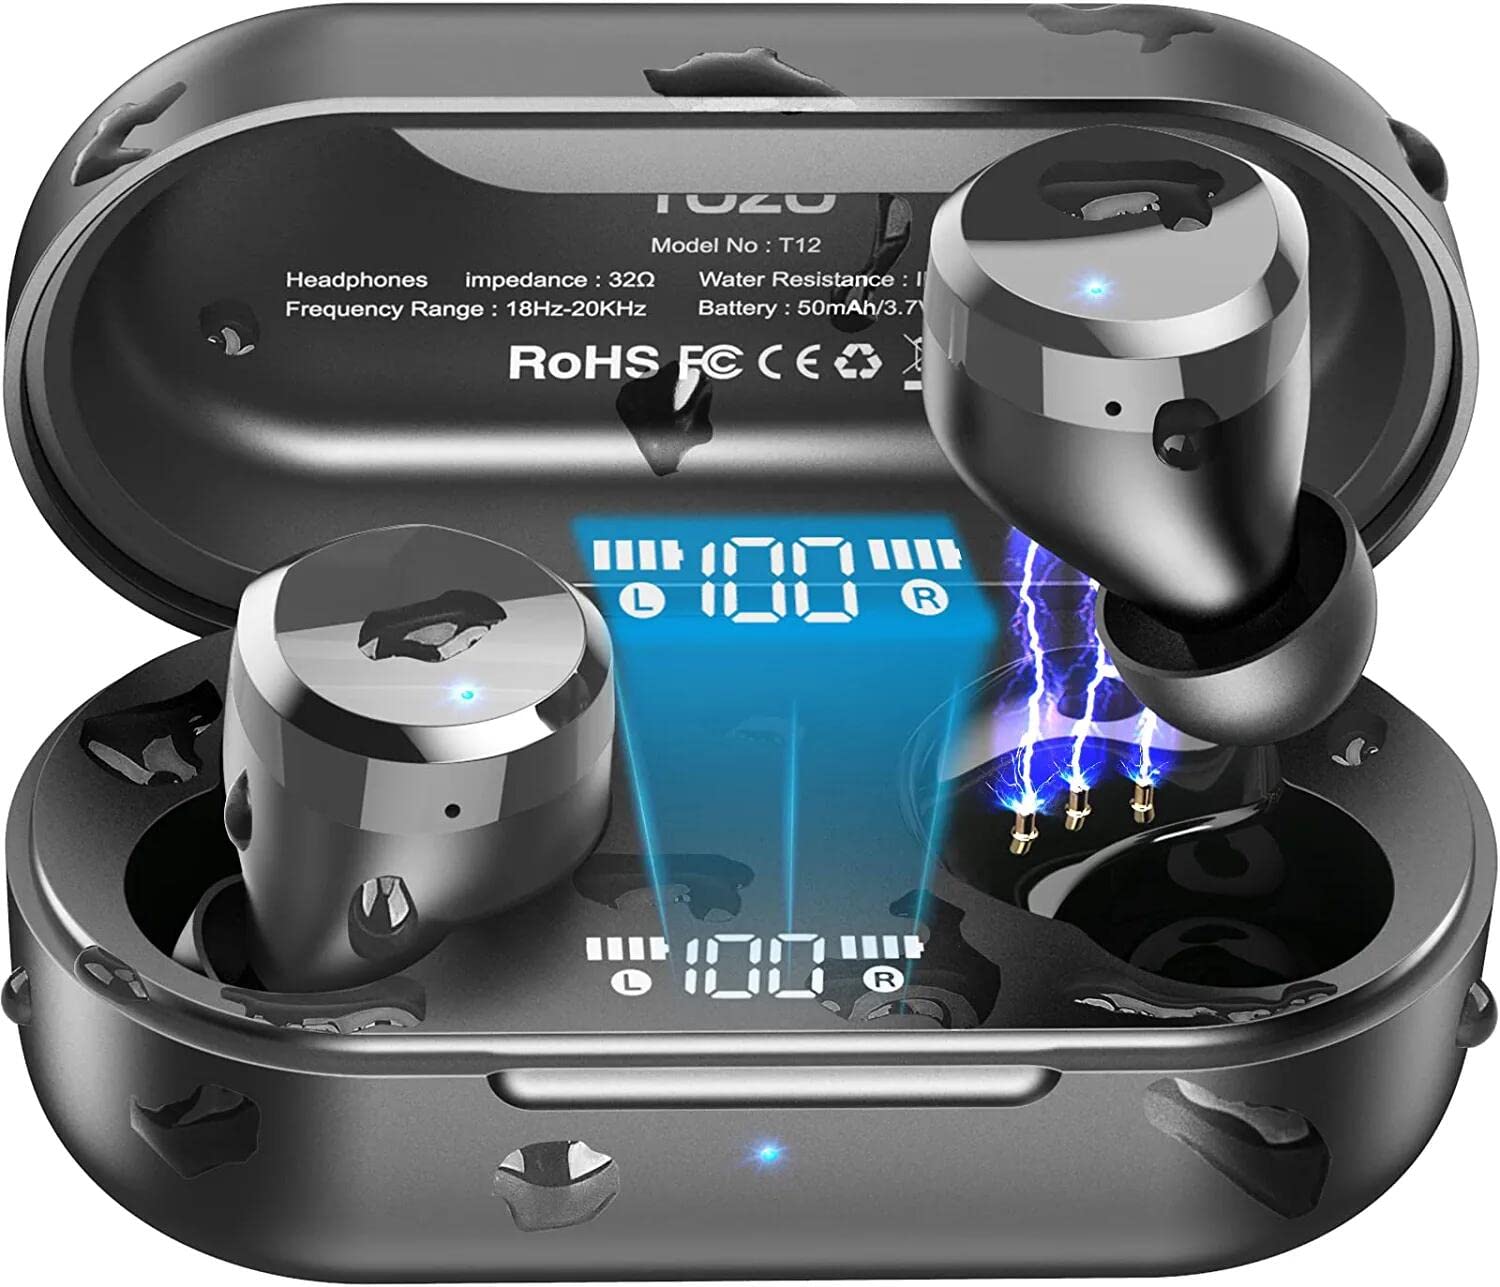 TOZO T12 2022 无线耳塞式蓝牙 5.3 耳机优质音质触摸控制 LED 数字显示无线充电盒耳机深黑色...